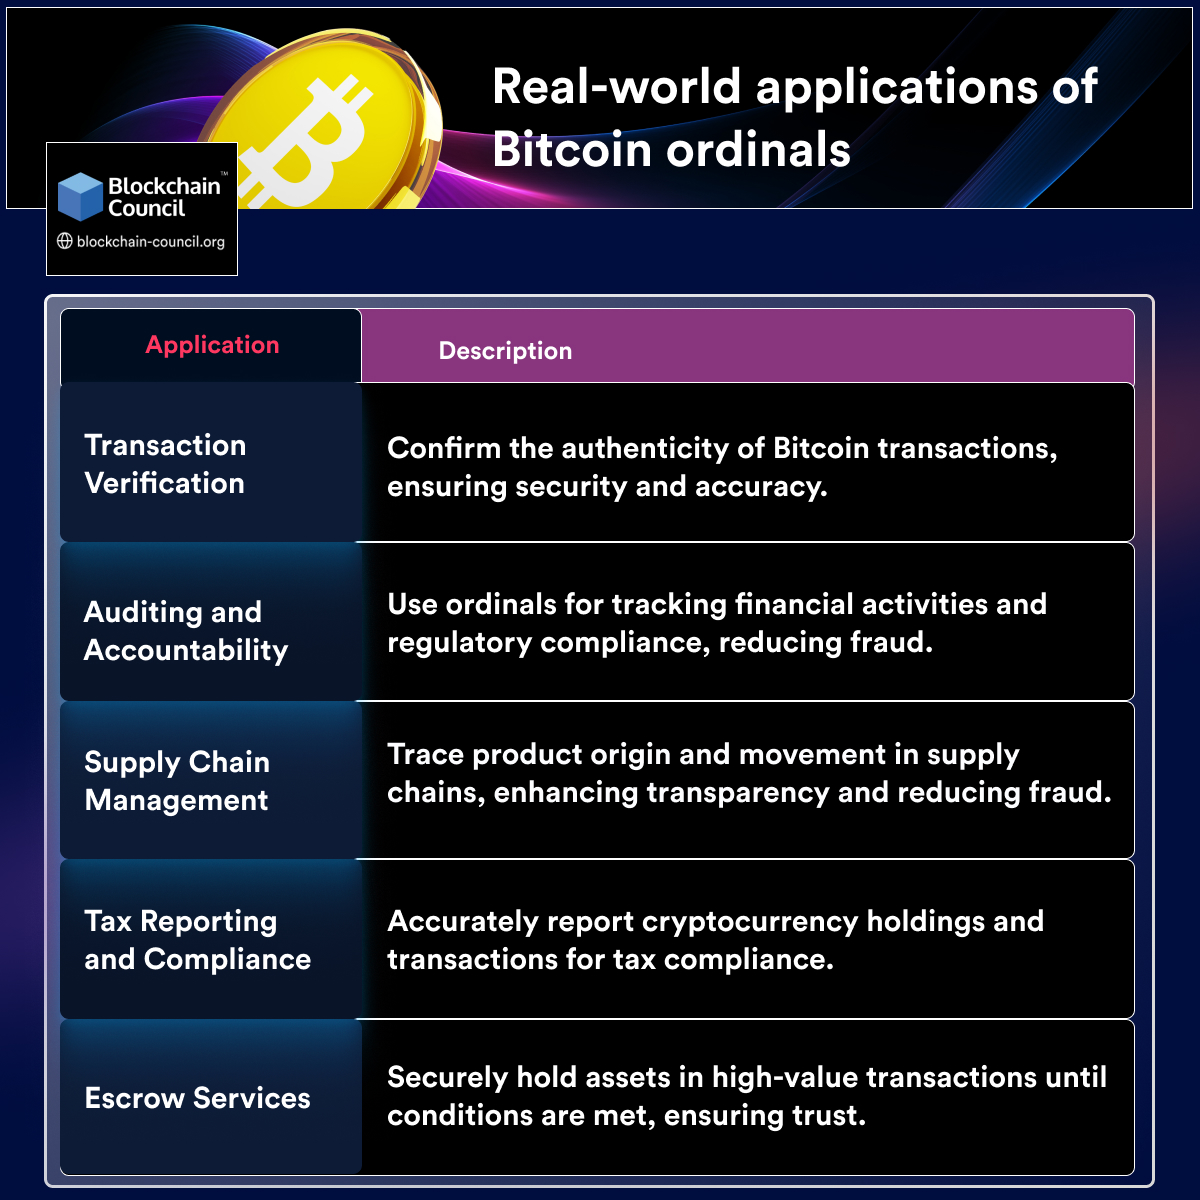 Real-world applications of Bitcoin ordinals